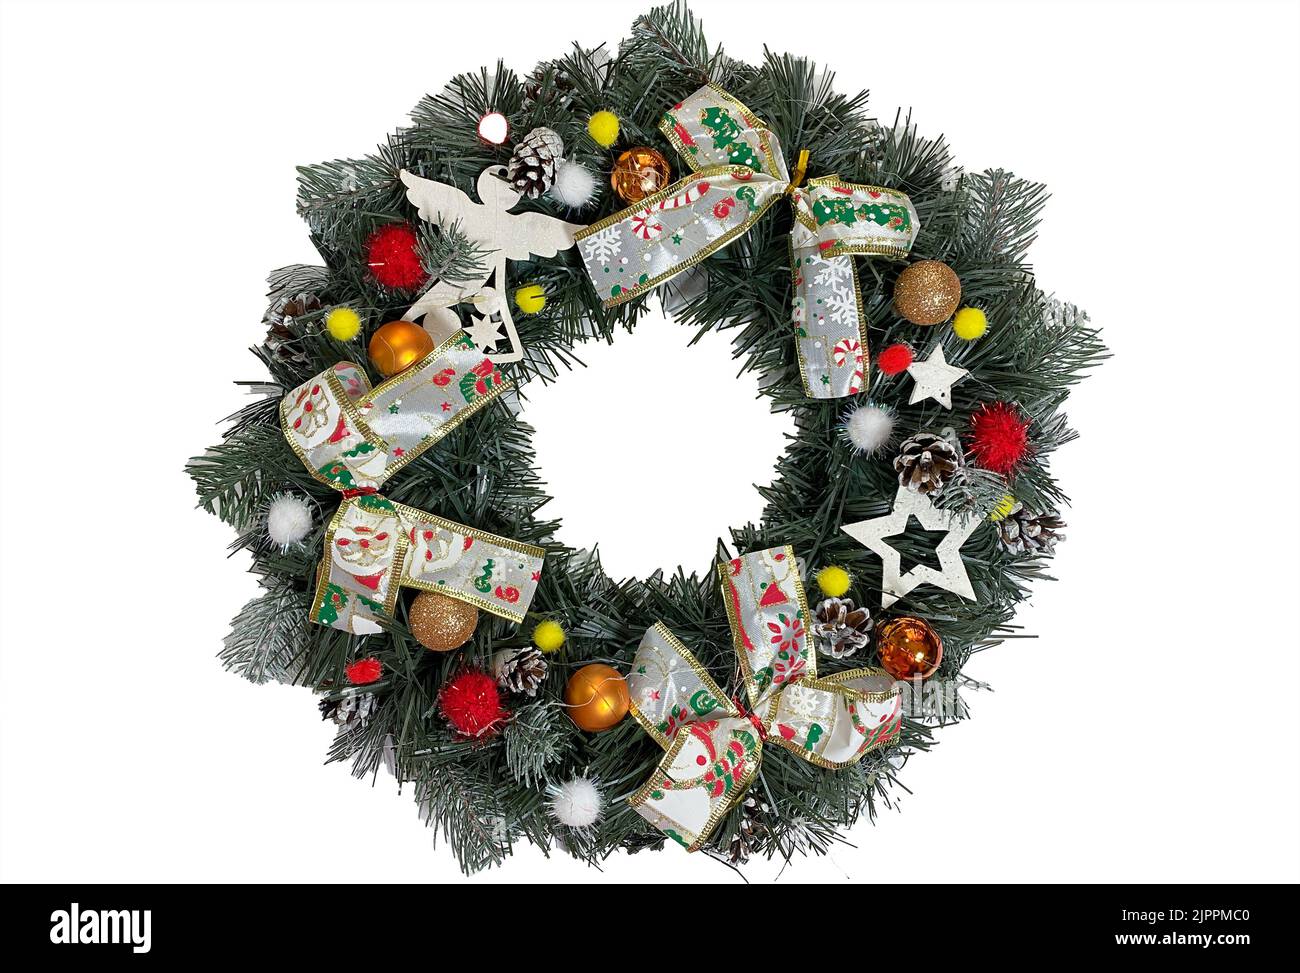 Corona di Natale che decorano la porta d'ingresso per le vacanze in abete rosso, archi in argento, stelle e palle di Natale isolati su sfondo bianco Foto Stock